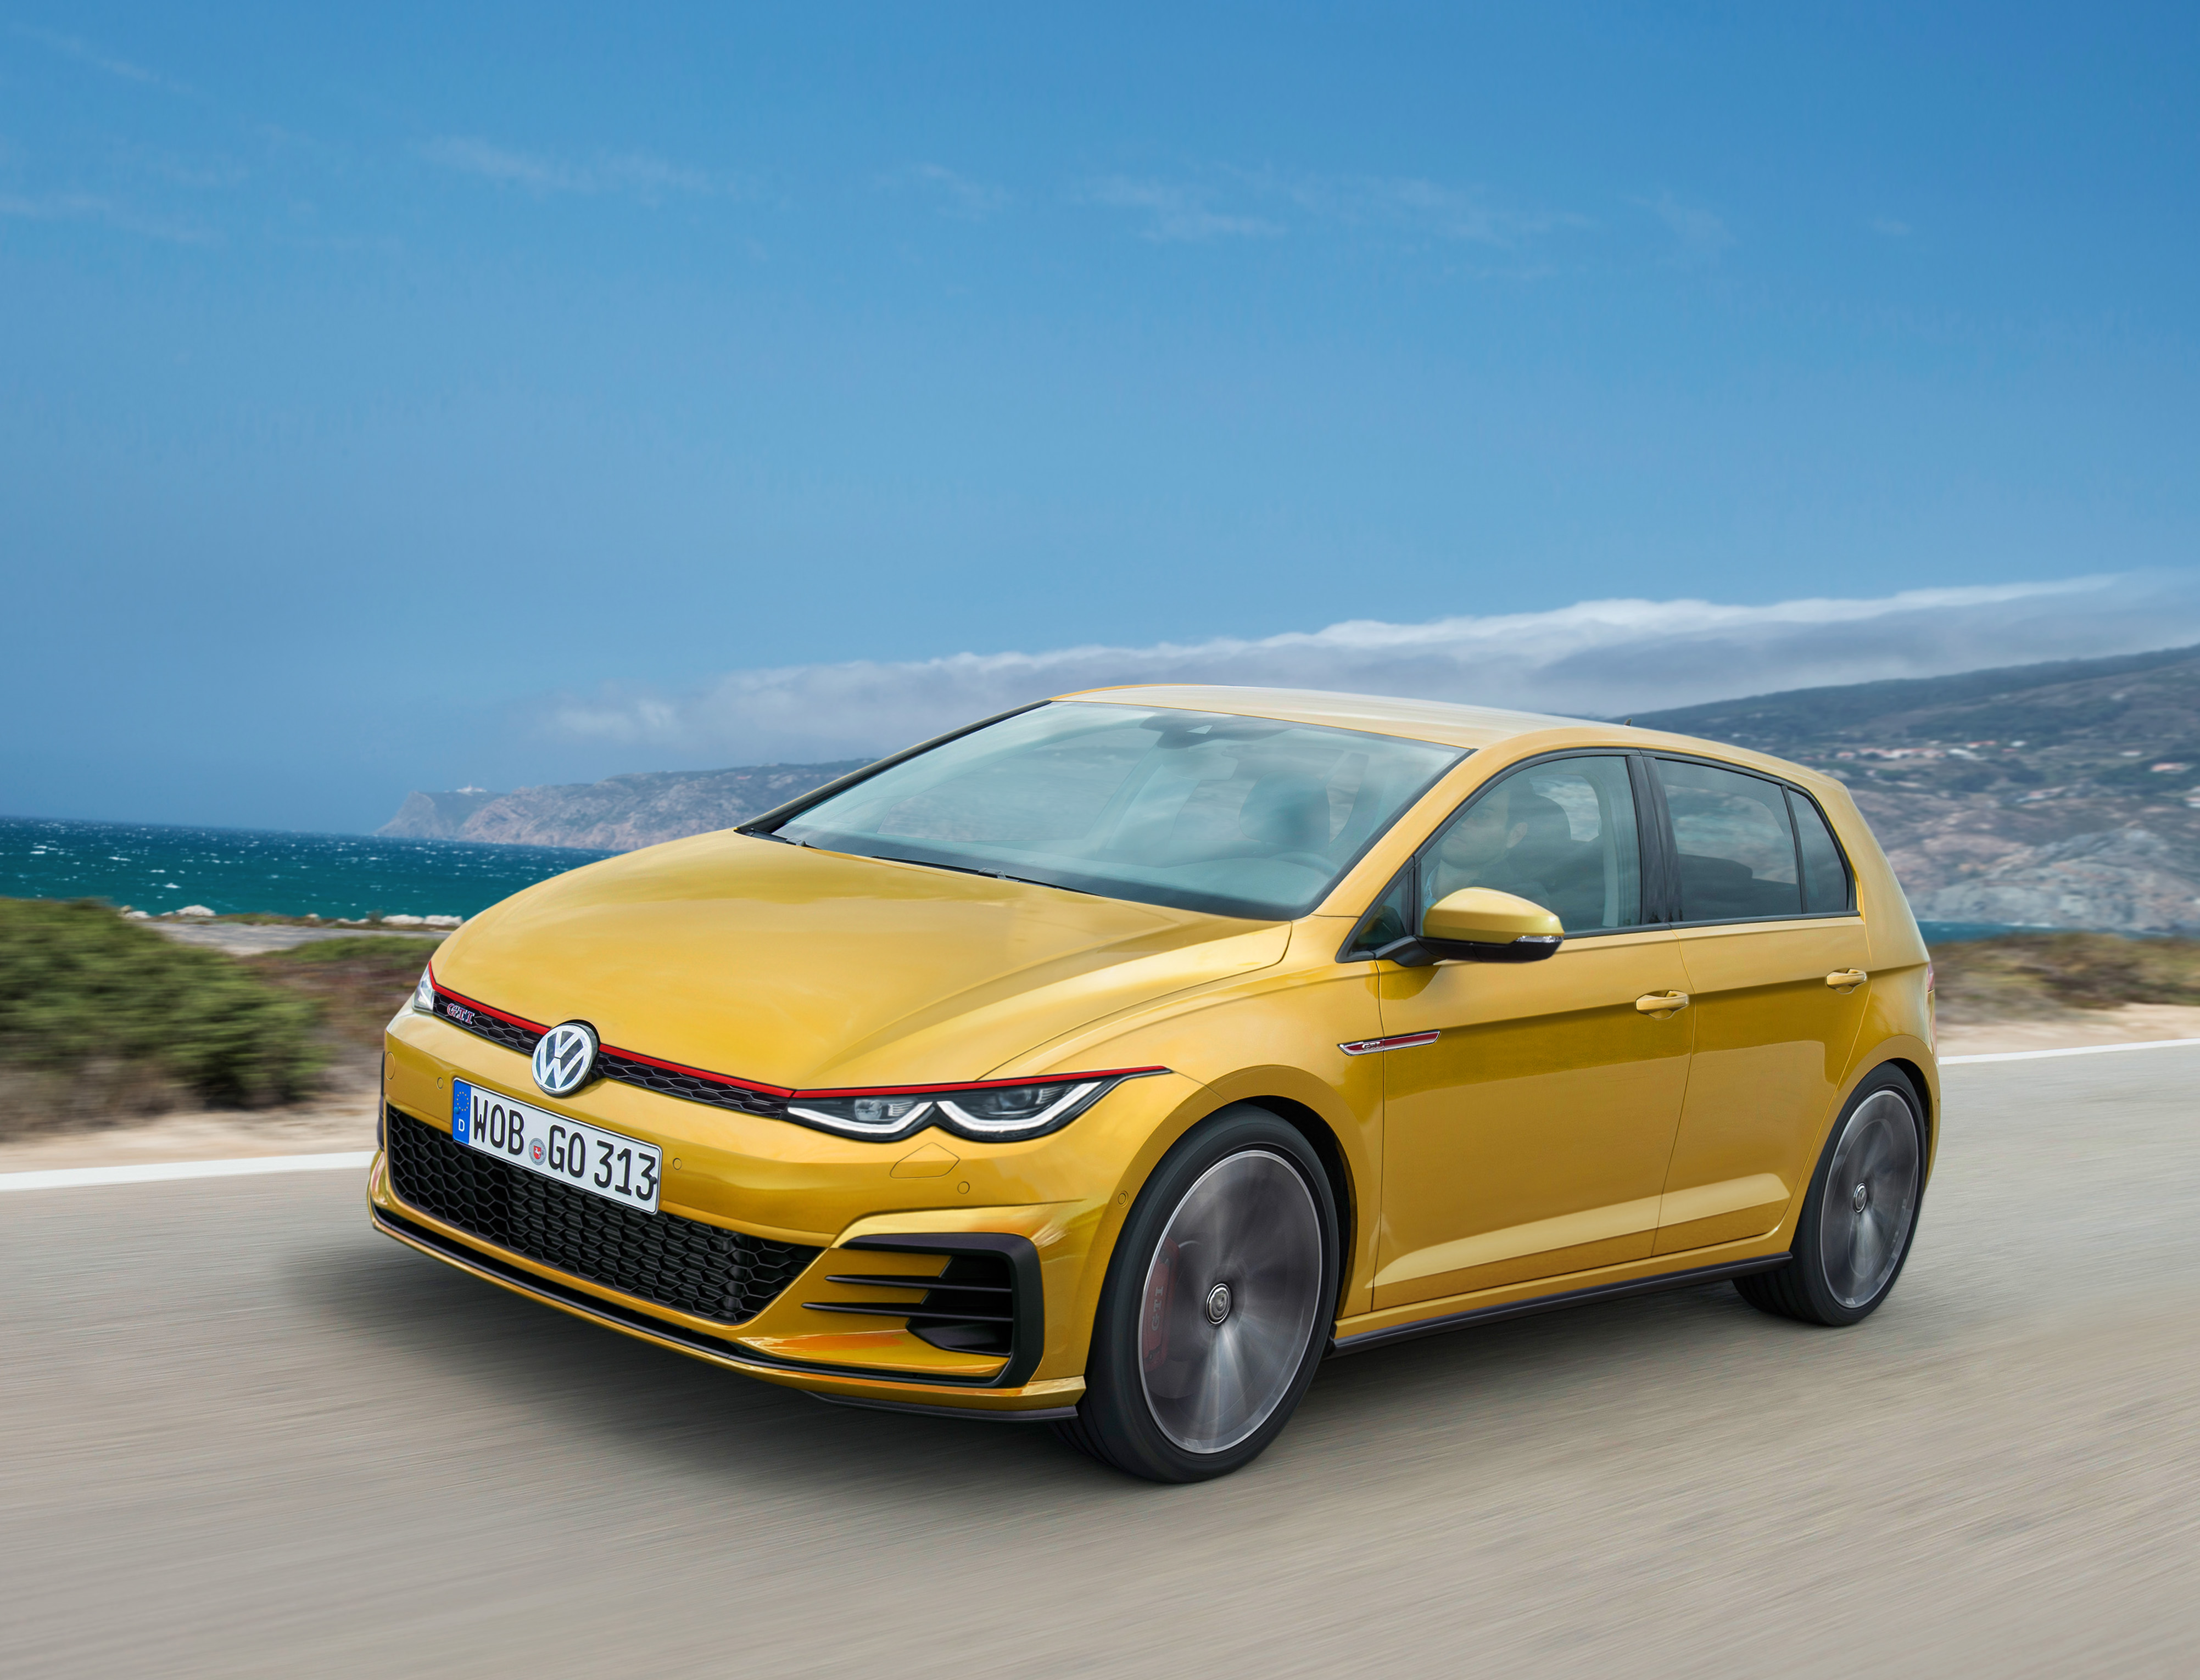 Oplossen Succes voordeel Nieuwe Volkswagen Golf vertraagd"